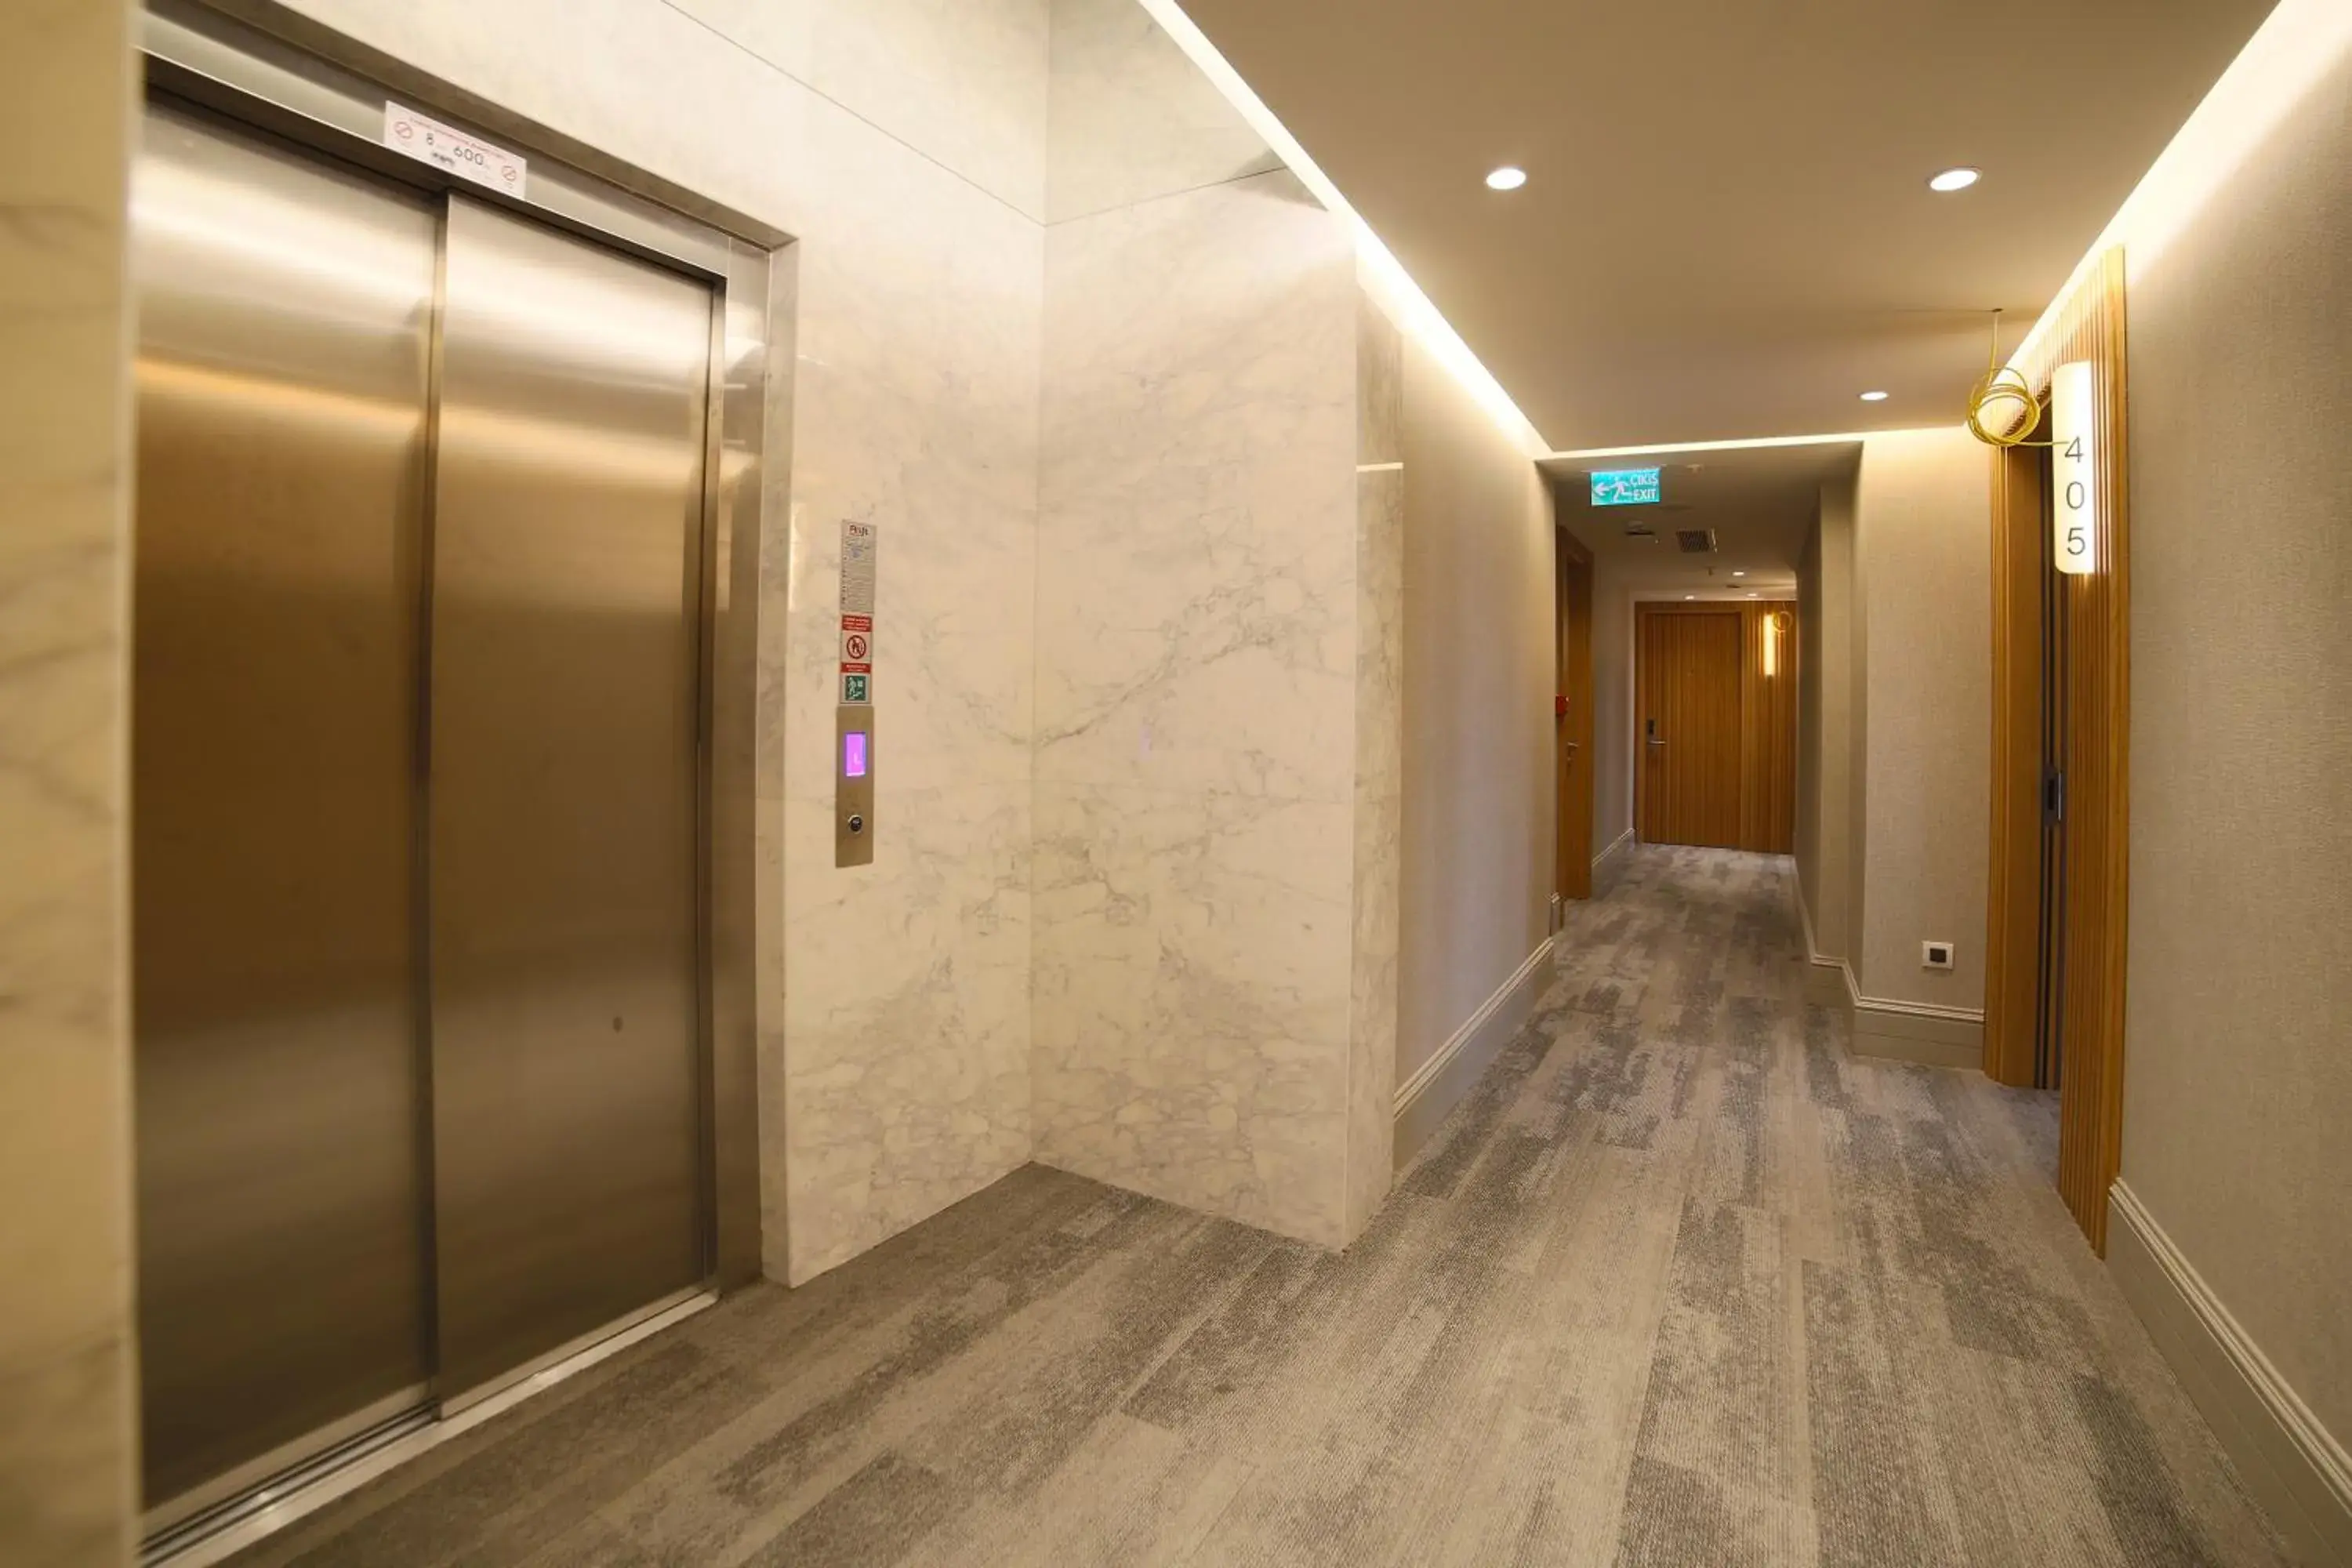 Floor plan in Dosso Dossi Hotels Yenikapı